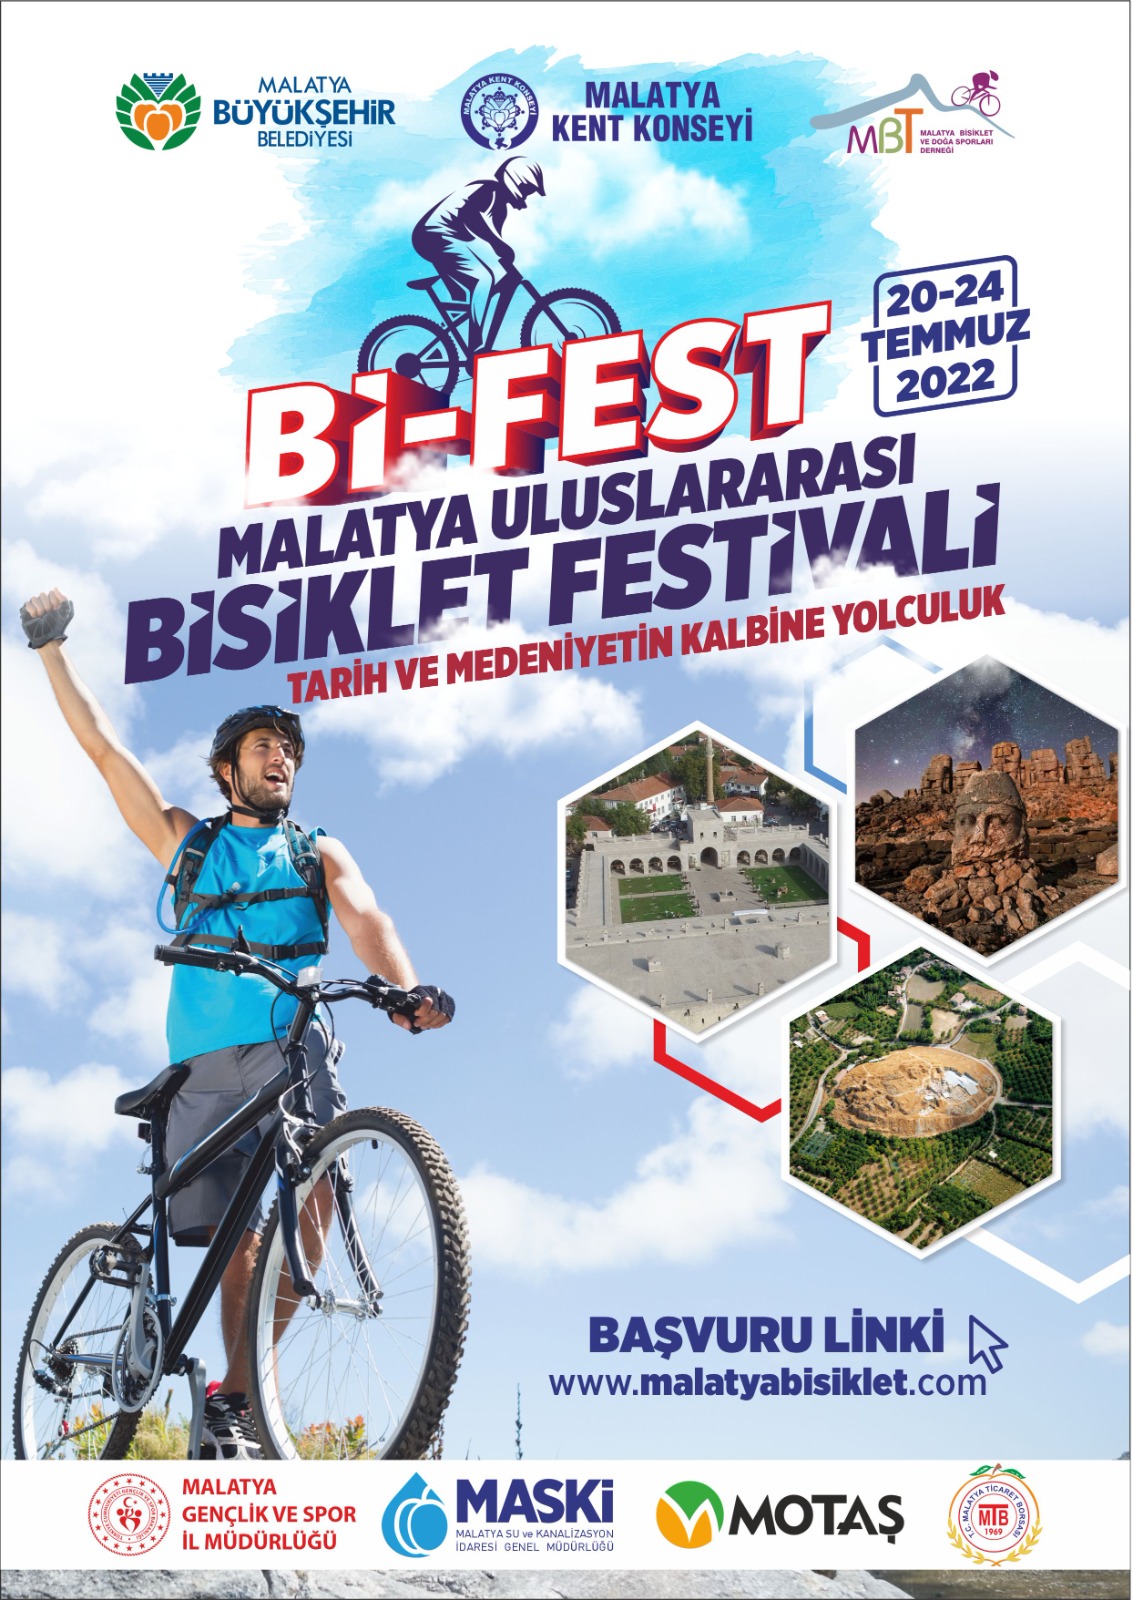 20-24 Temmuz 2022 Bi-Fest Malatya Uluslararası Bisiklet Festivali "Tarih ve Medeniyetin Kalbine Yolculuk" programı'mız yarın saat 18.30'da Kayısı Festivali kortej yürüyüşü ile başlıyor.